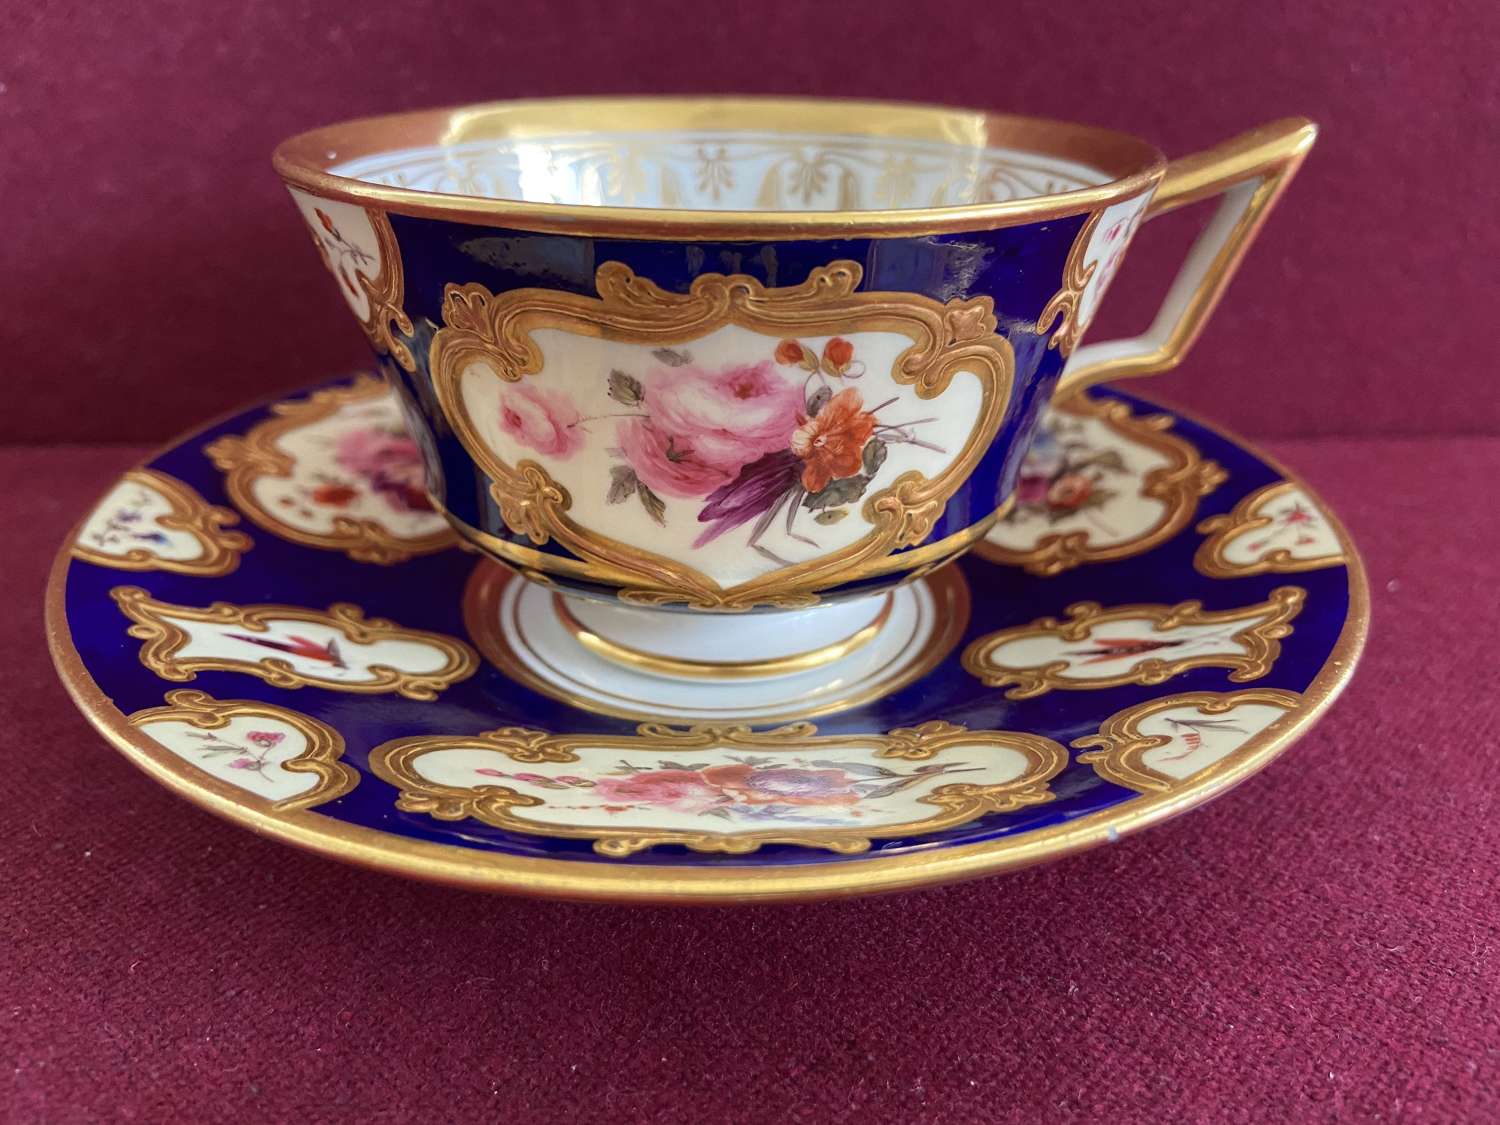 A Flight, Barr & Barr Worcester Porcelain Teacup & Saucer c.1815